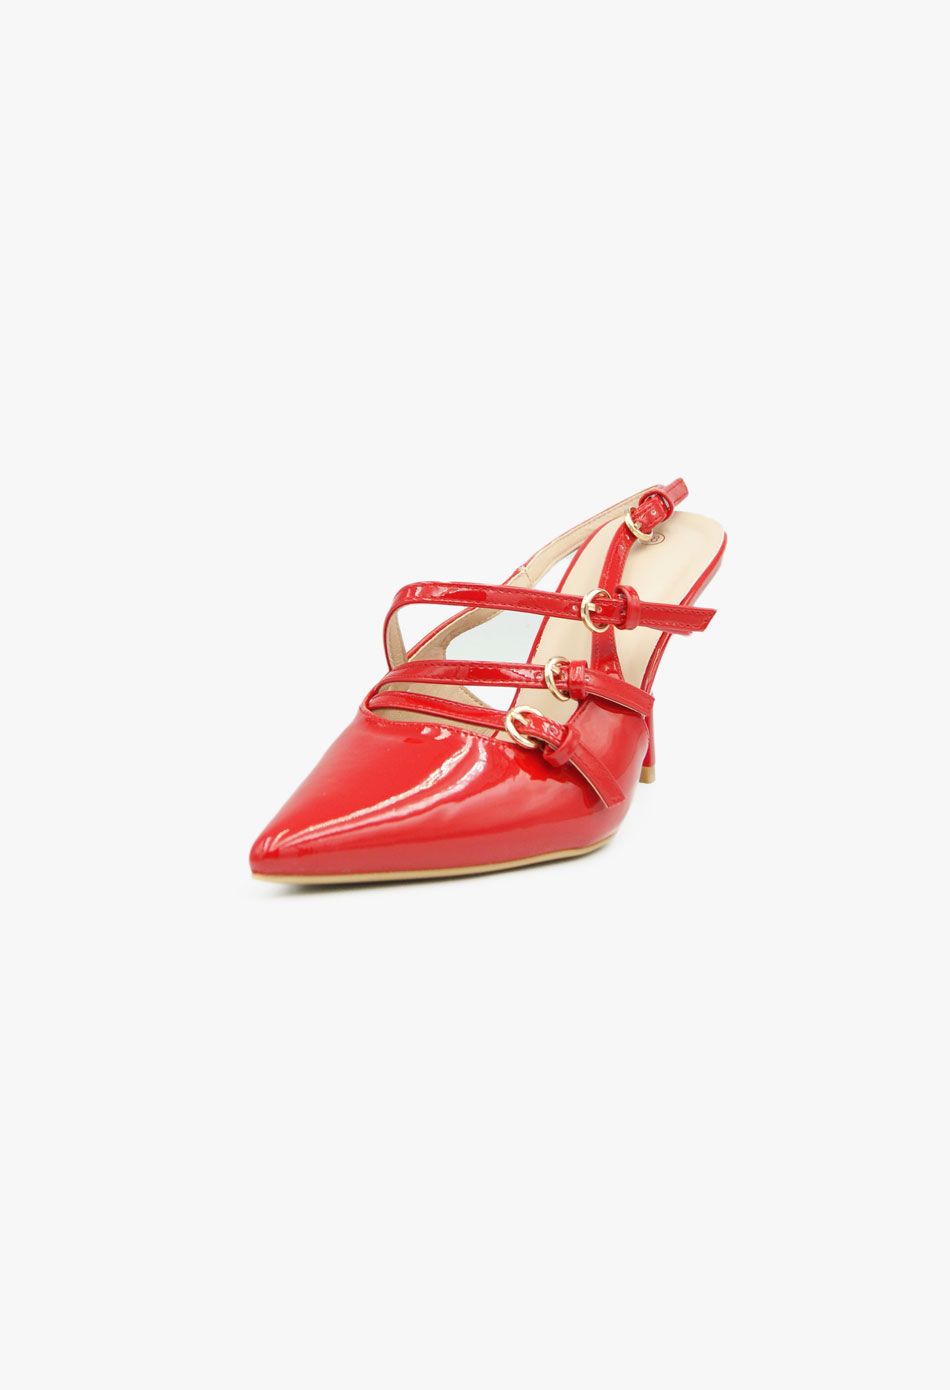 Γόβες Μυτερές με Πολλαπλά Λουράκια & Τόκες Κοκκινο / 5011-red Ανοιχτά Παπούτσια joya.gr